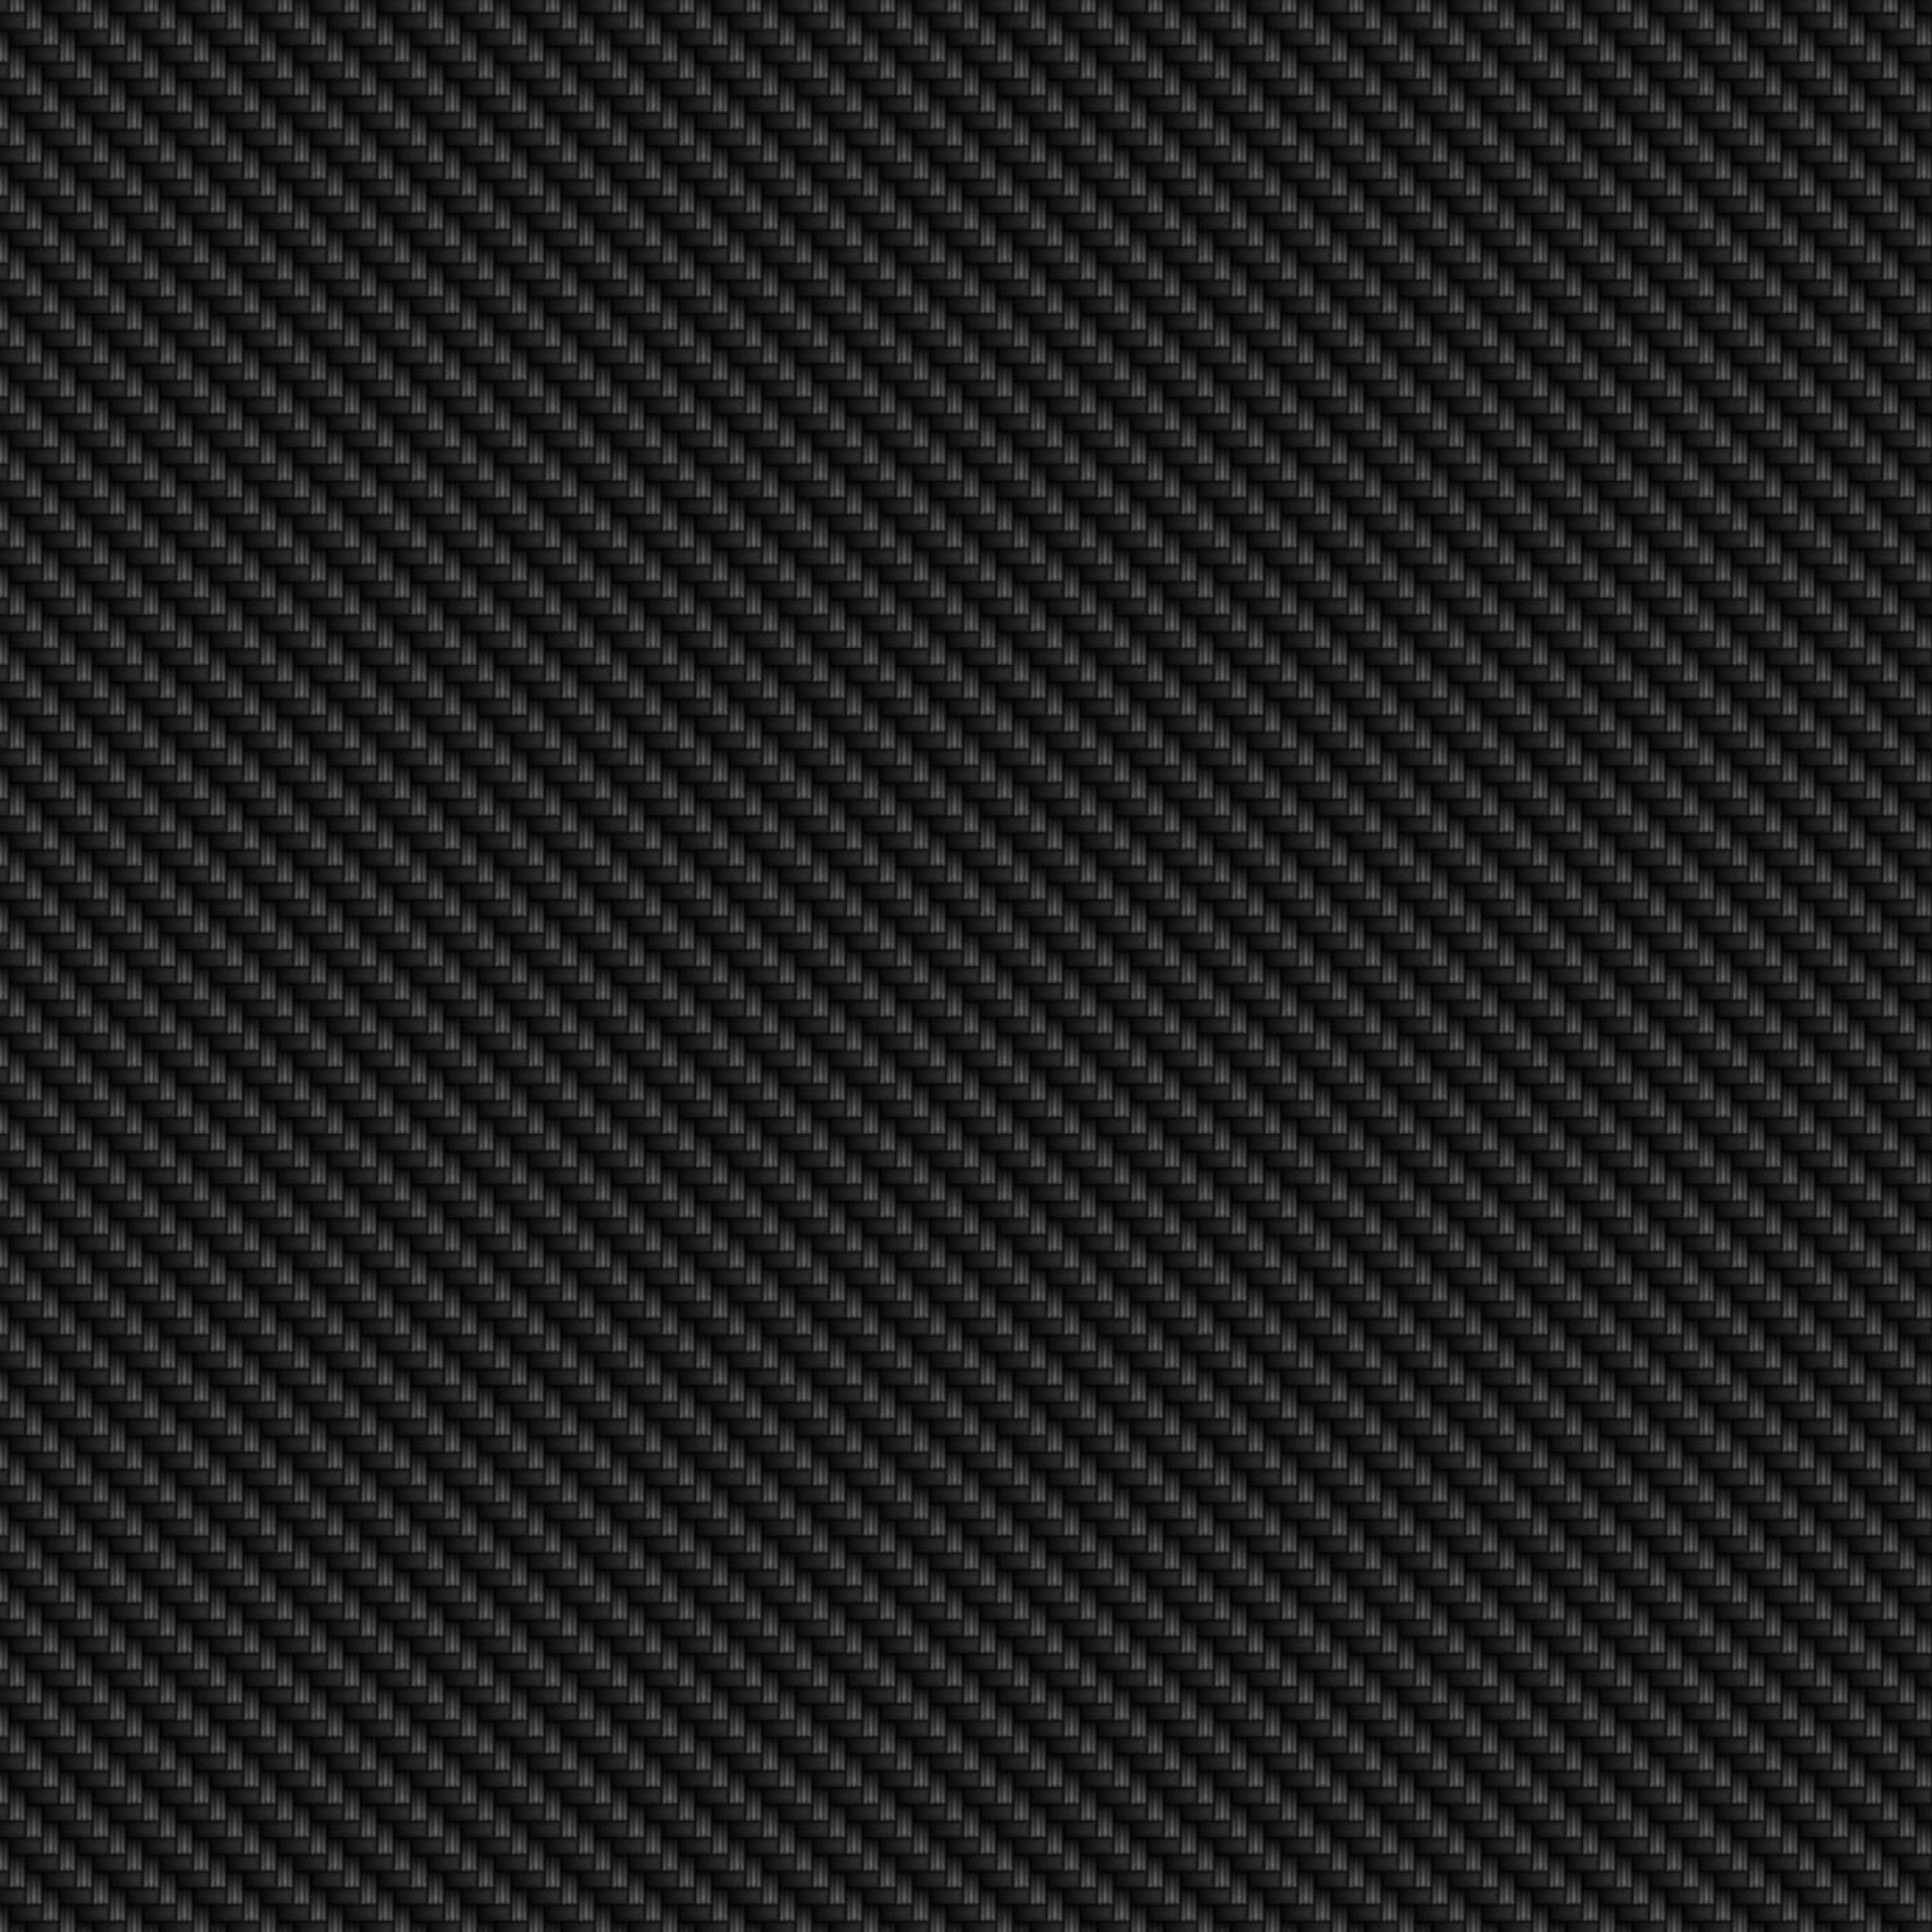 4K Carbon Fiber Wallpaper Free 4K Carbon Fiber Background